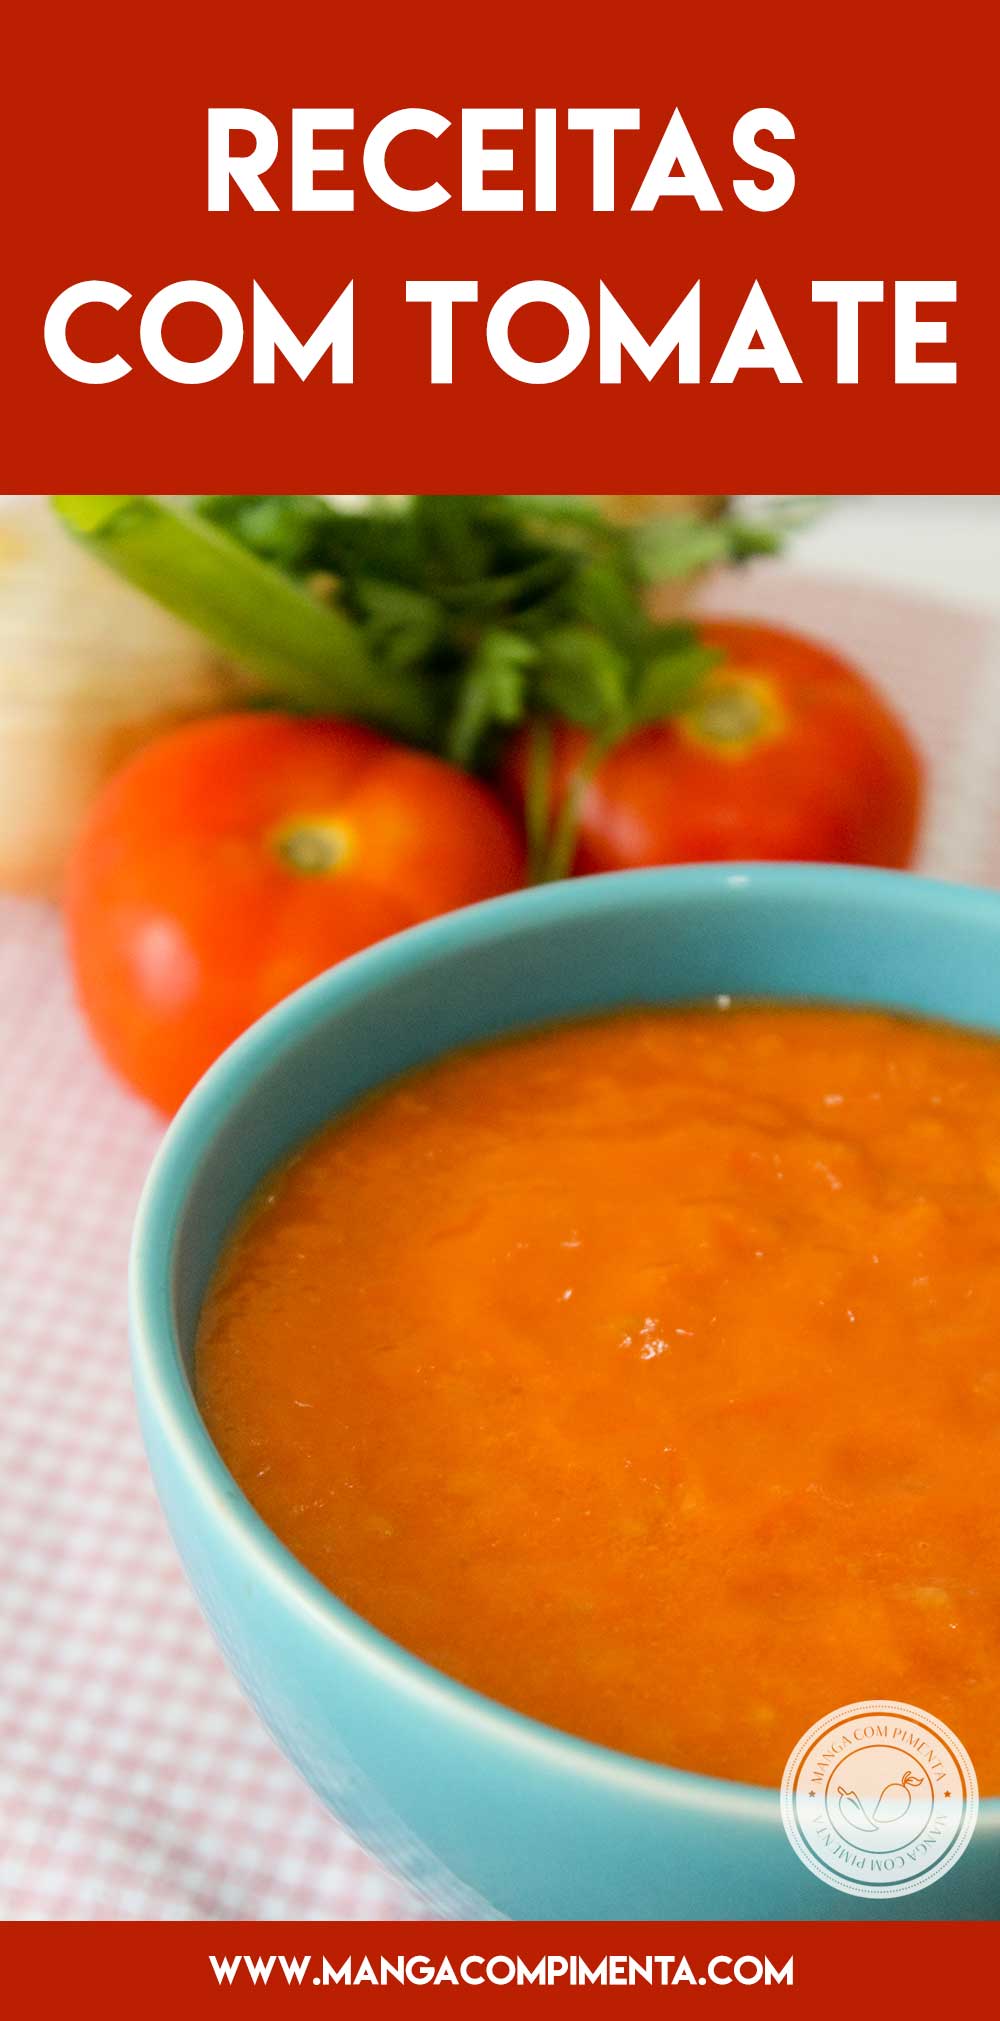 Confira 20 Receitas com Tomate - pratos deliciosos para qualquer ocasião!